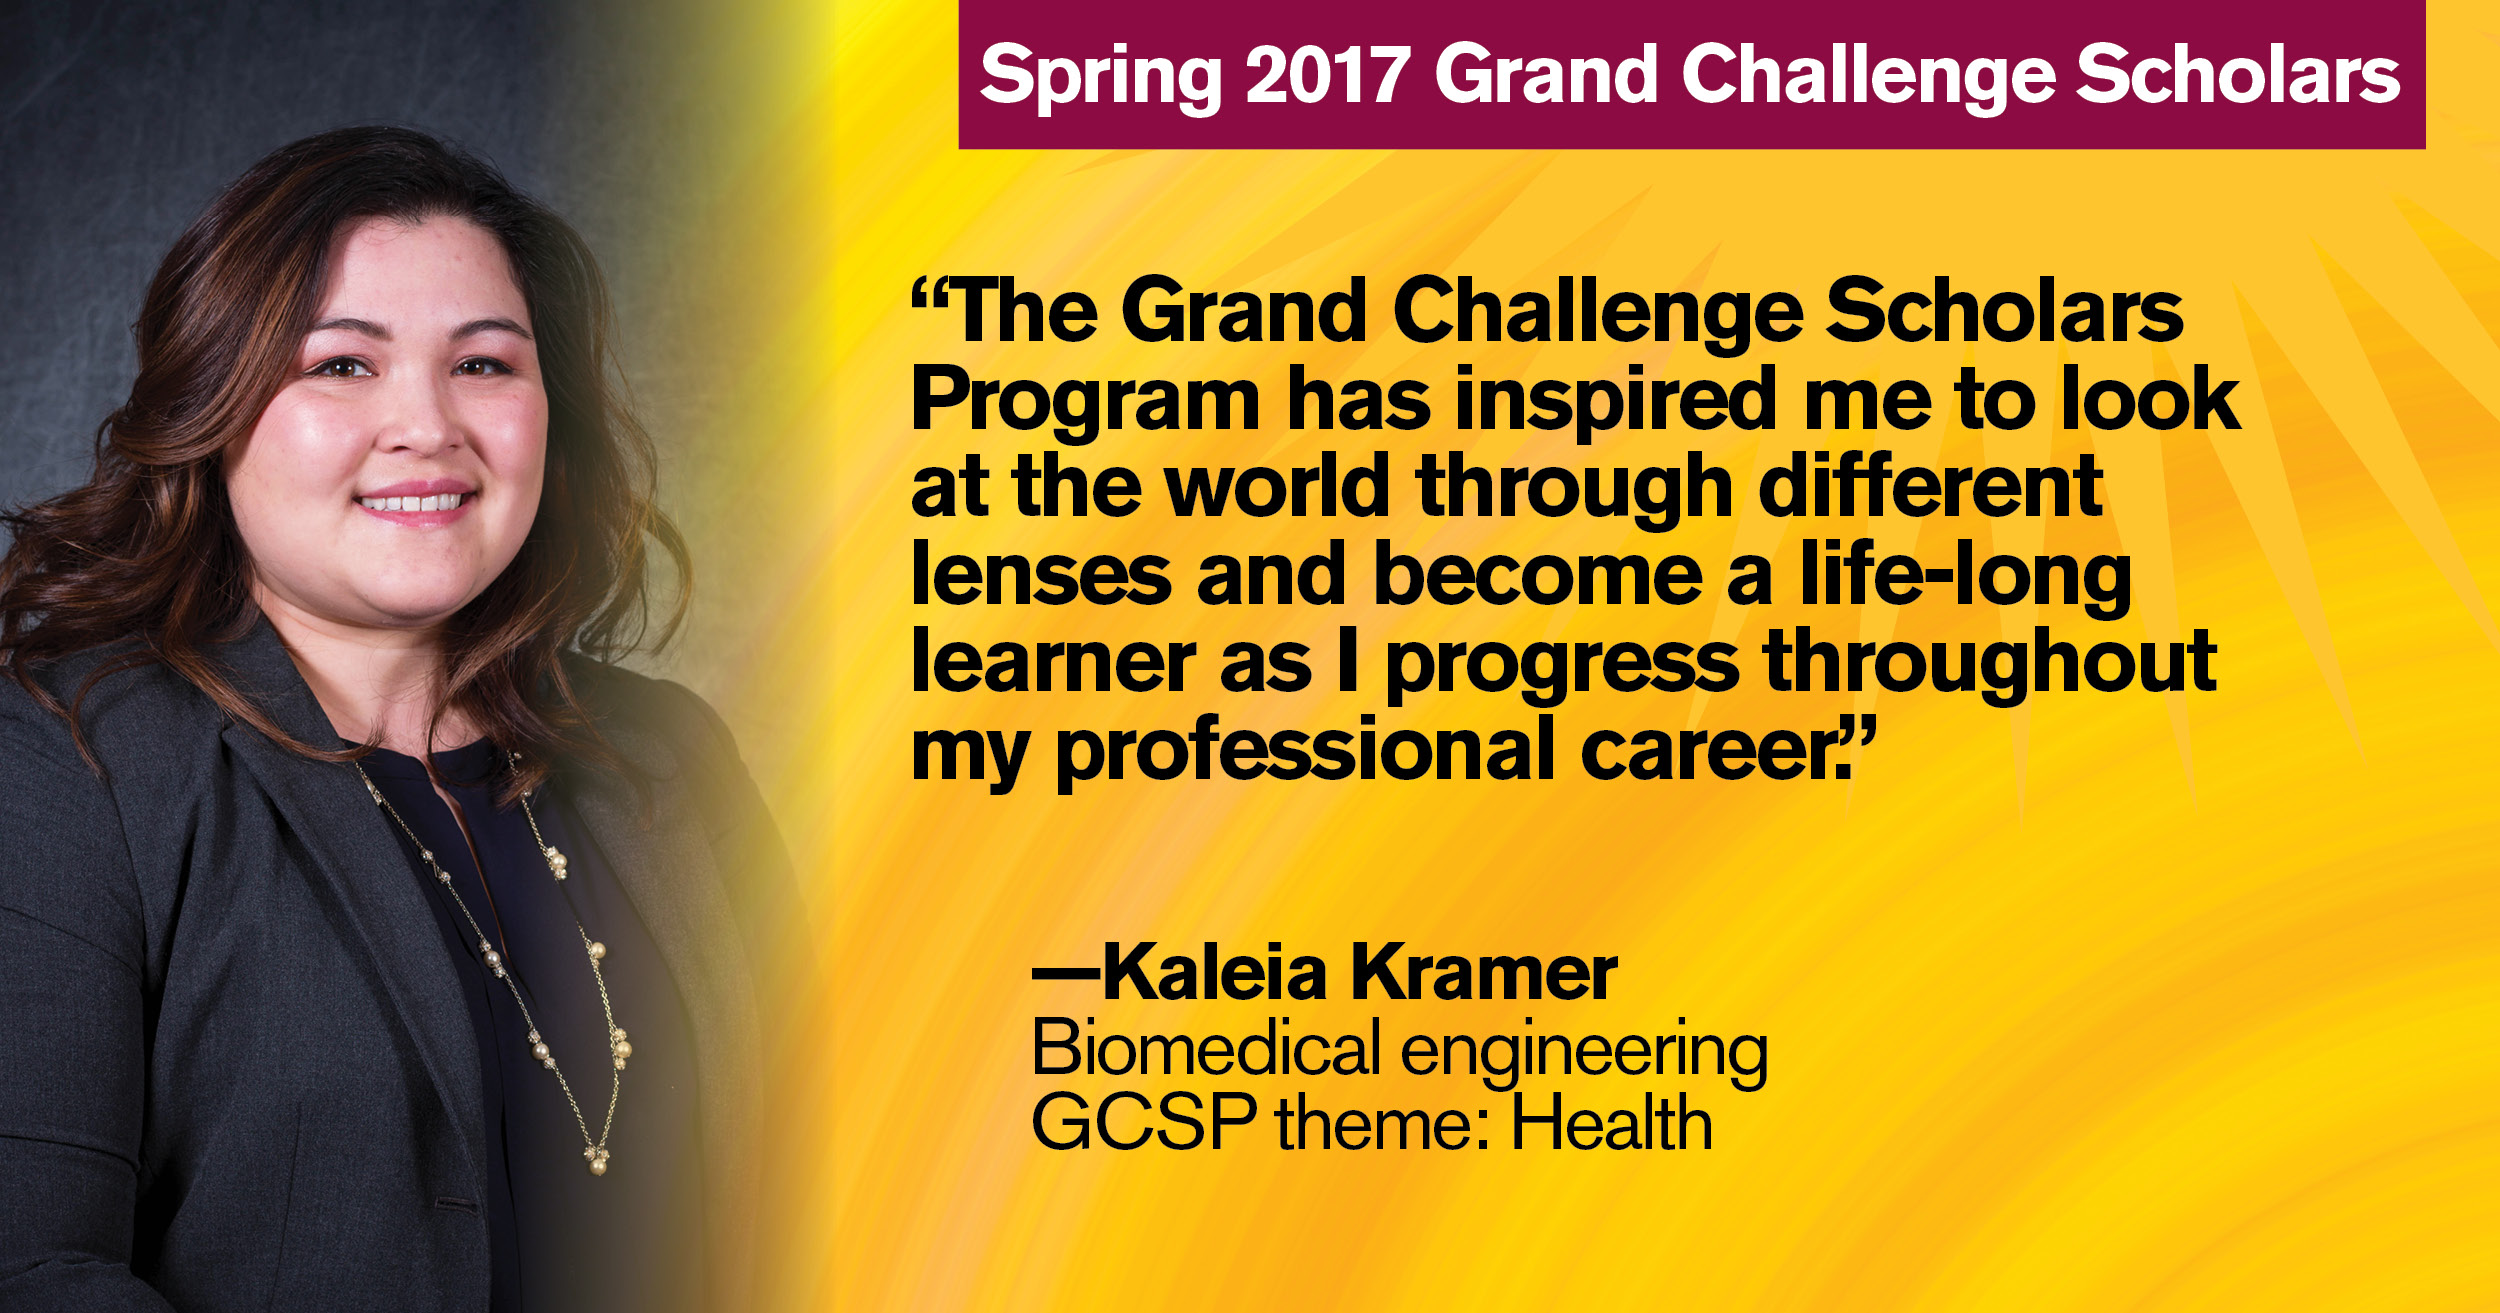 Spring 2017 Grand Challenge Scholar Kaleia Kramer